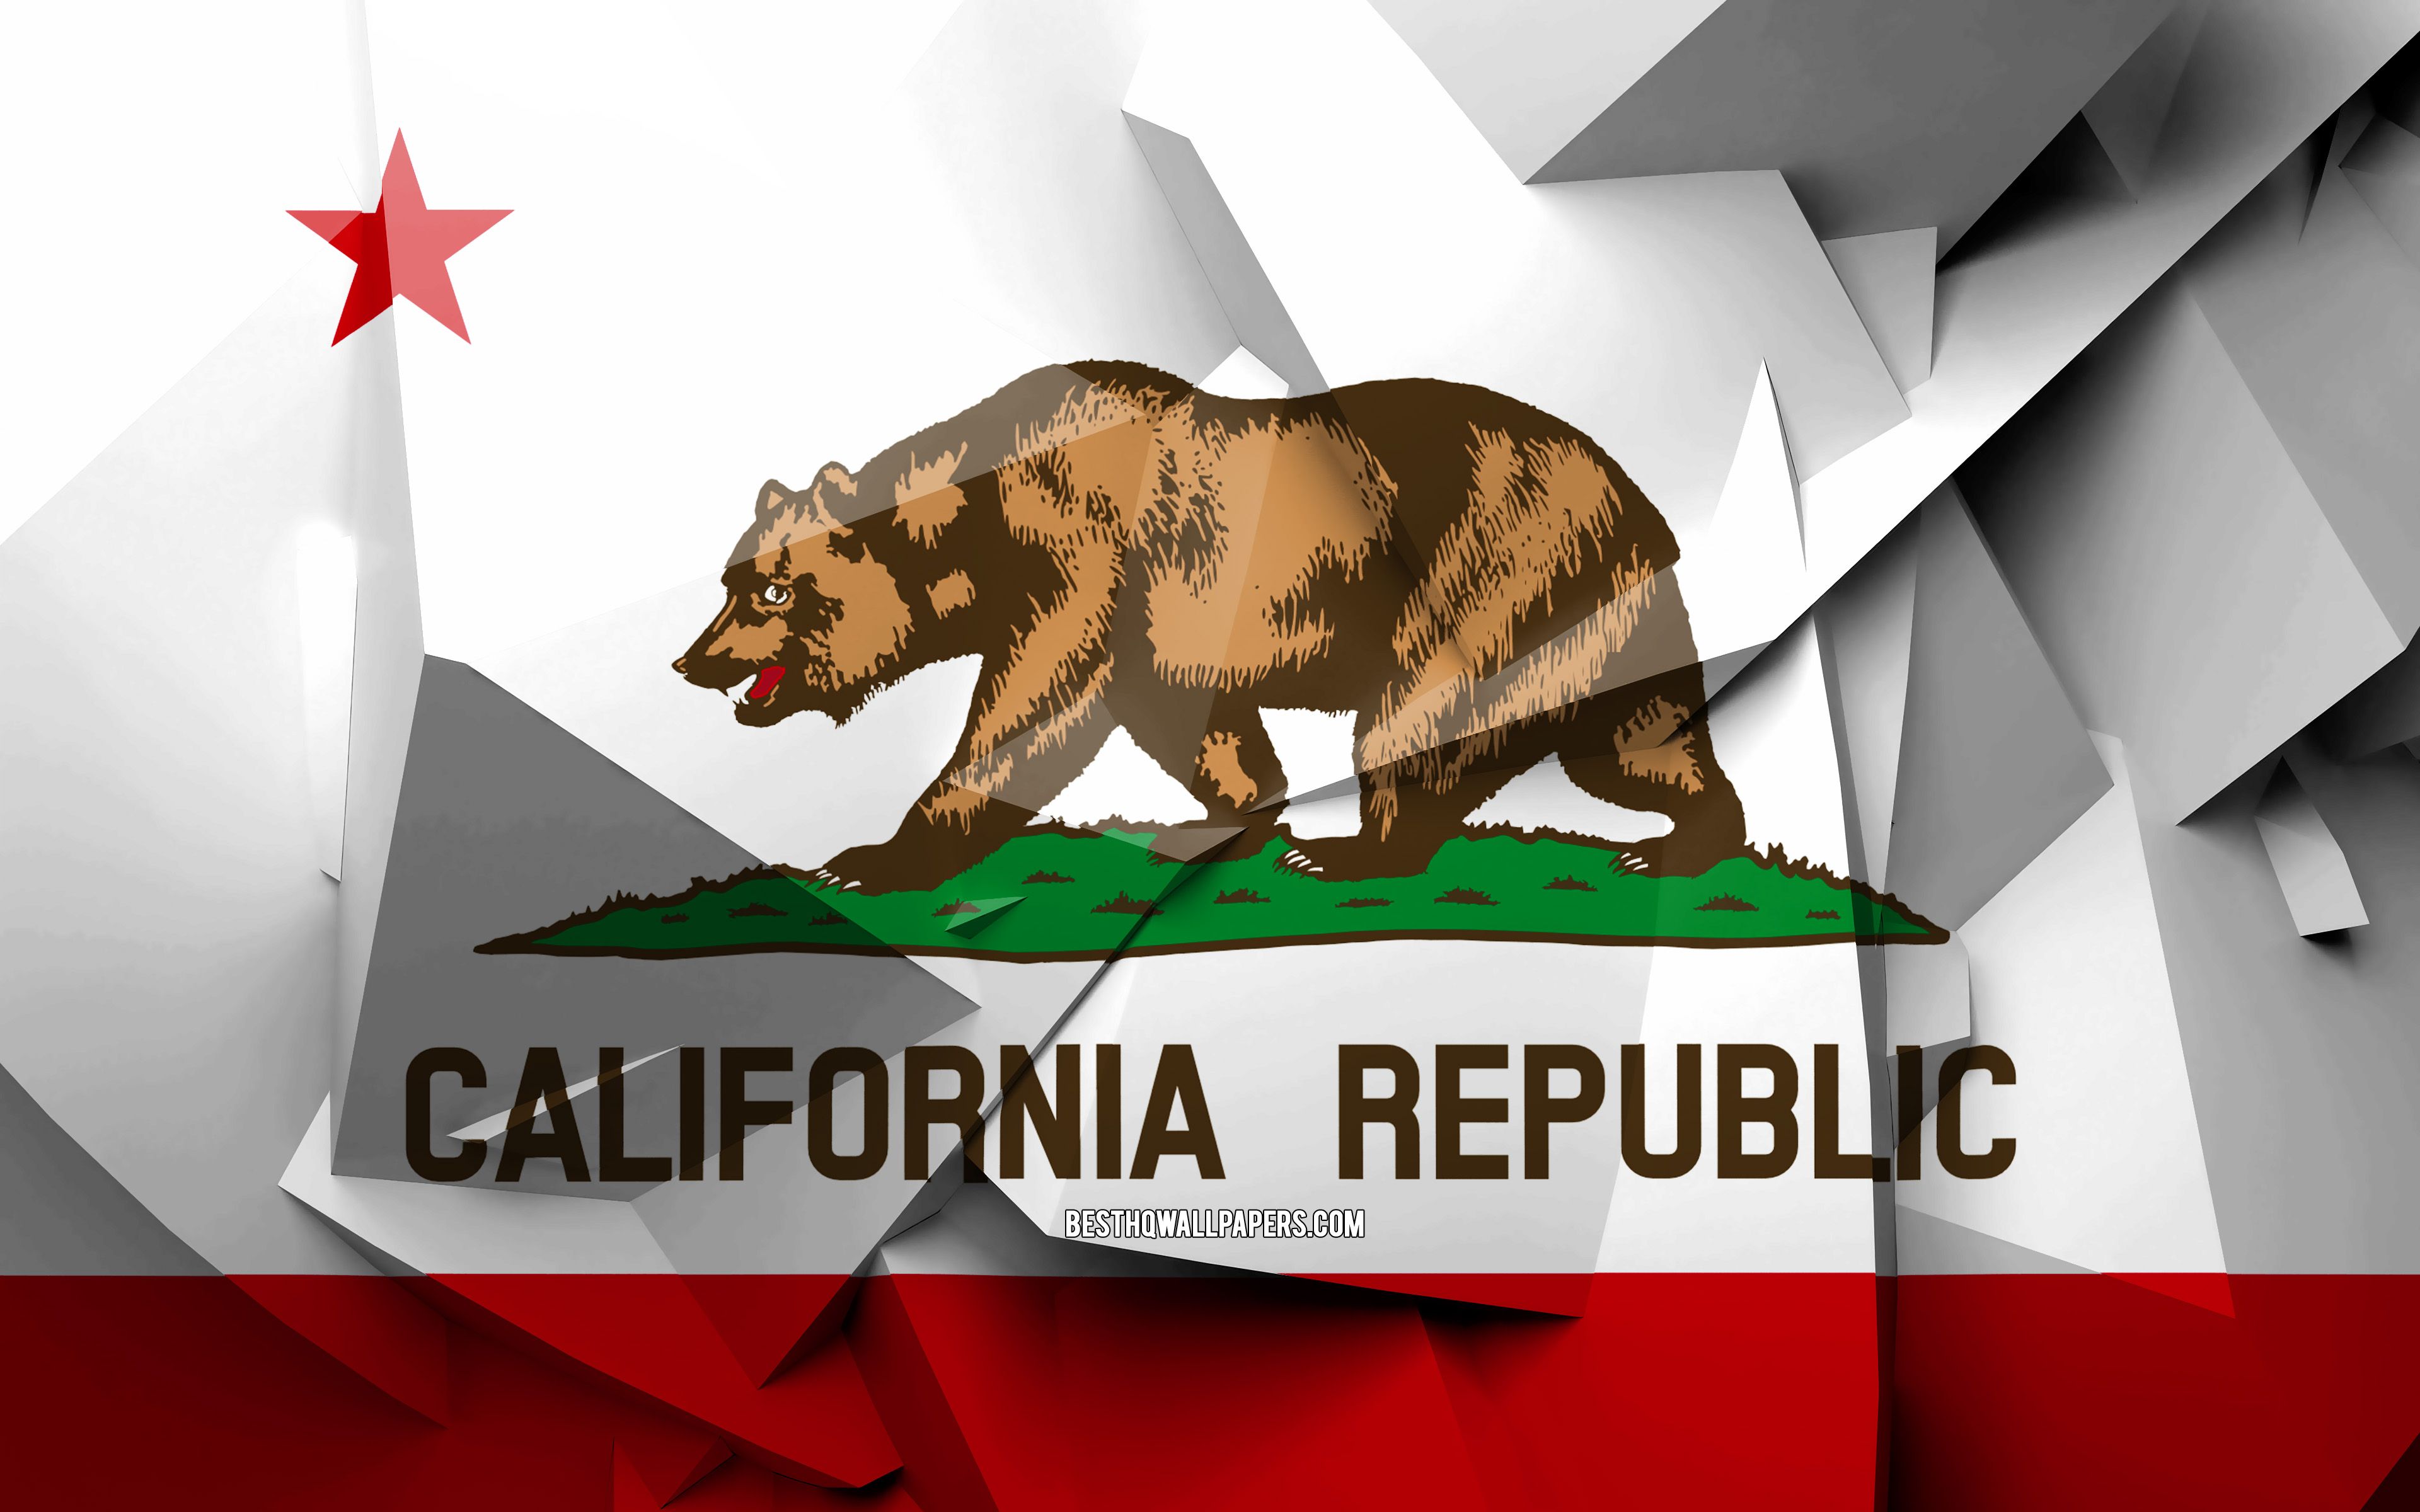 Download wallpaper 4k, Flag of California, geometric art